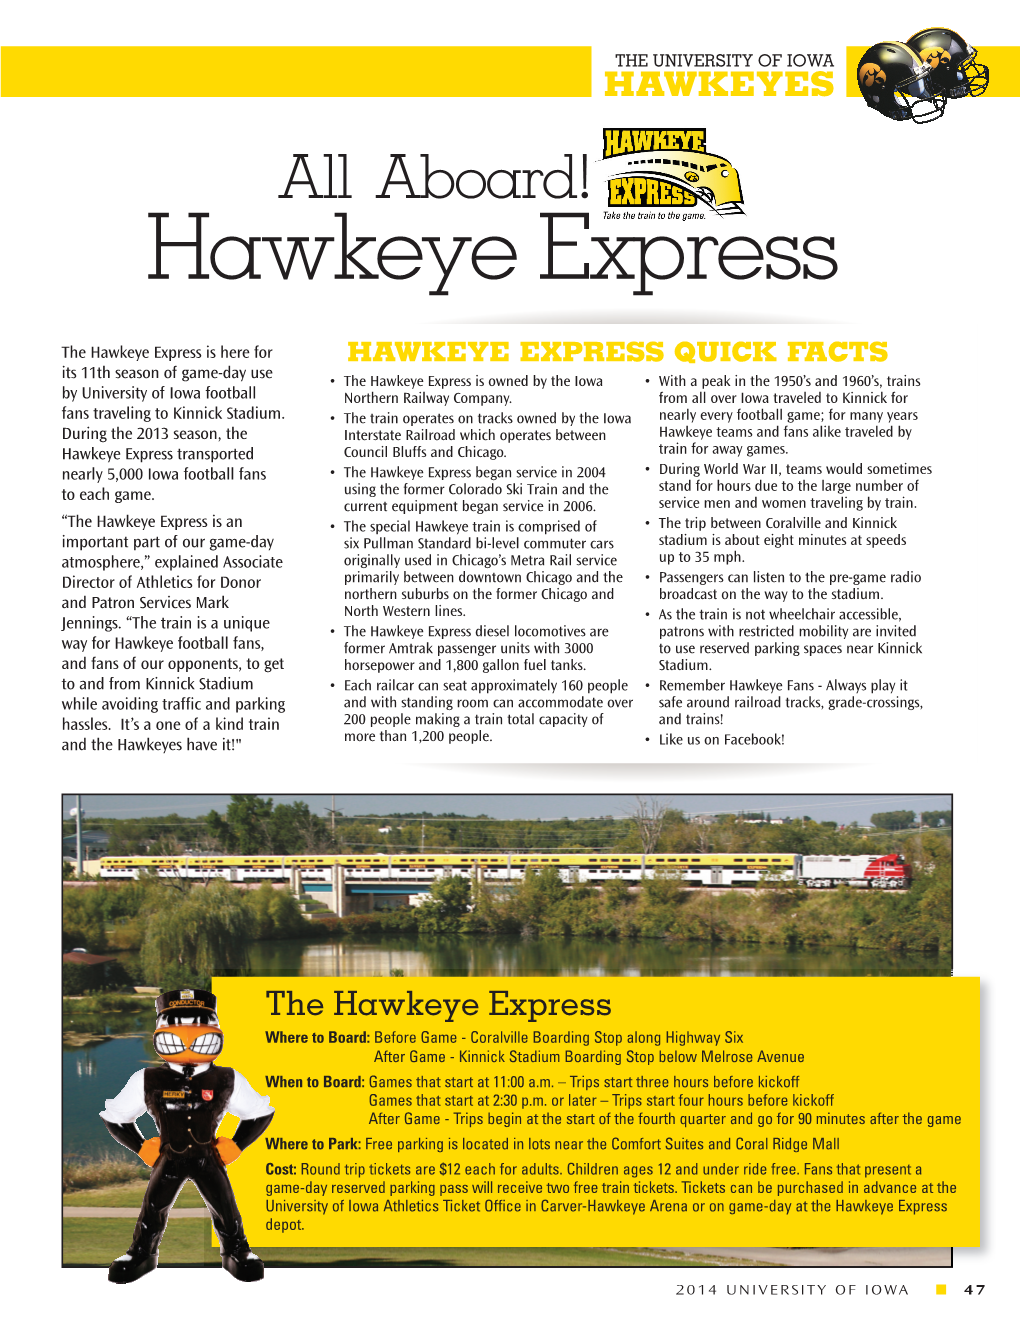 Hawkeye Express